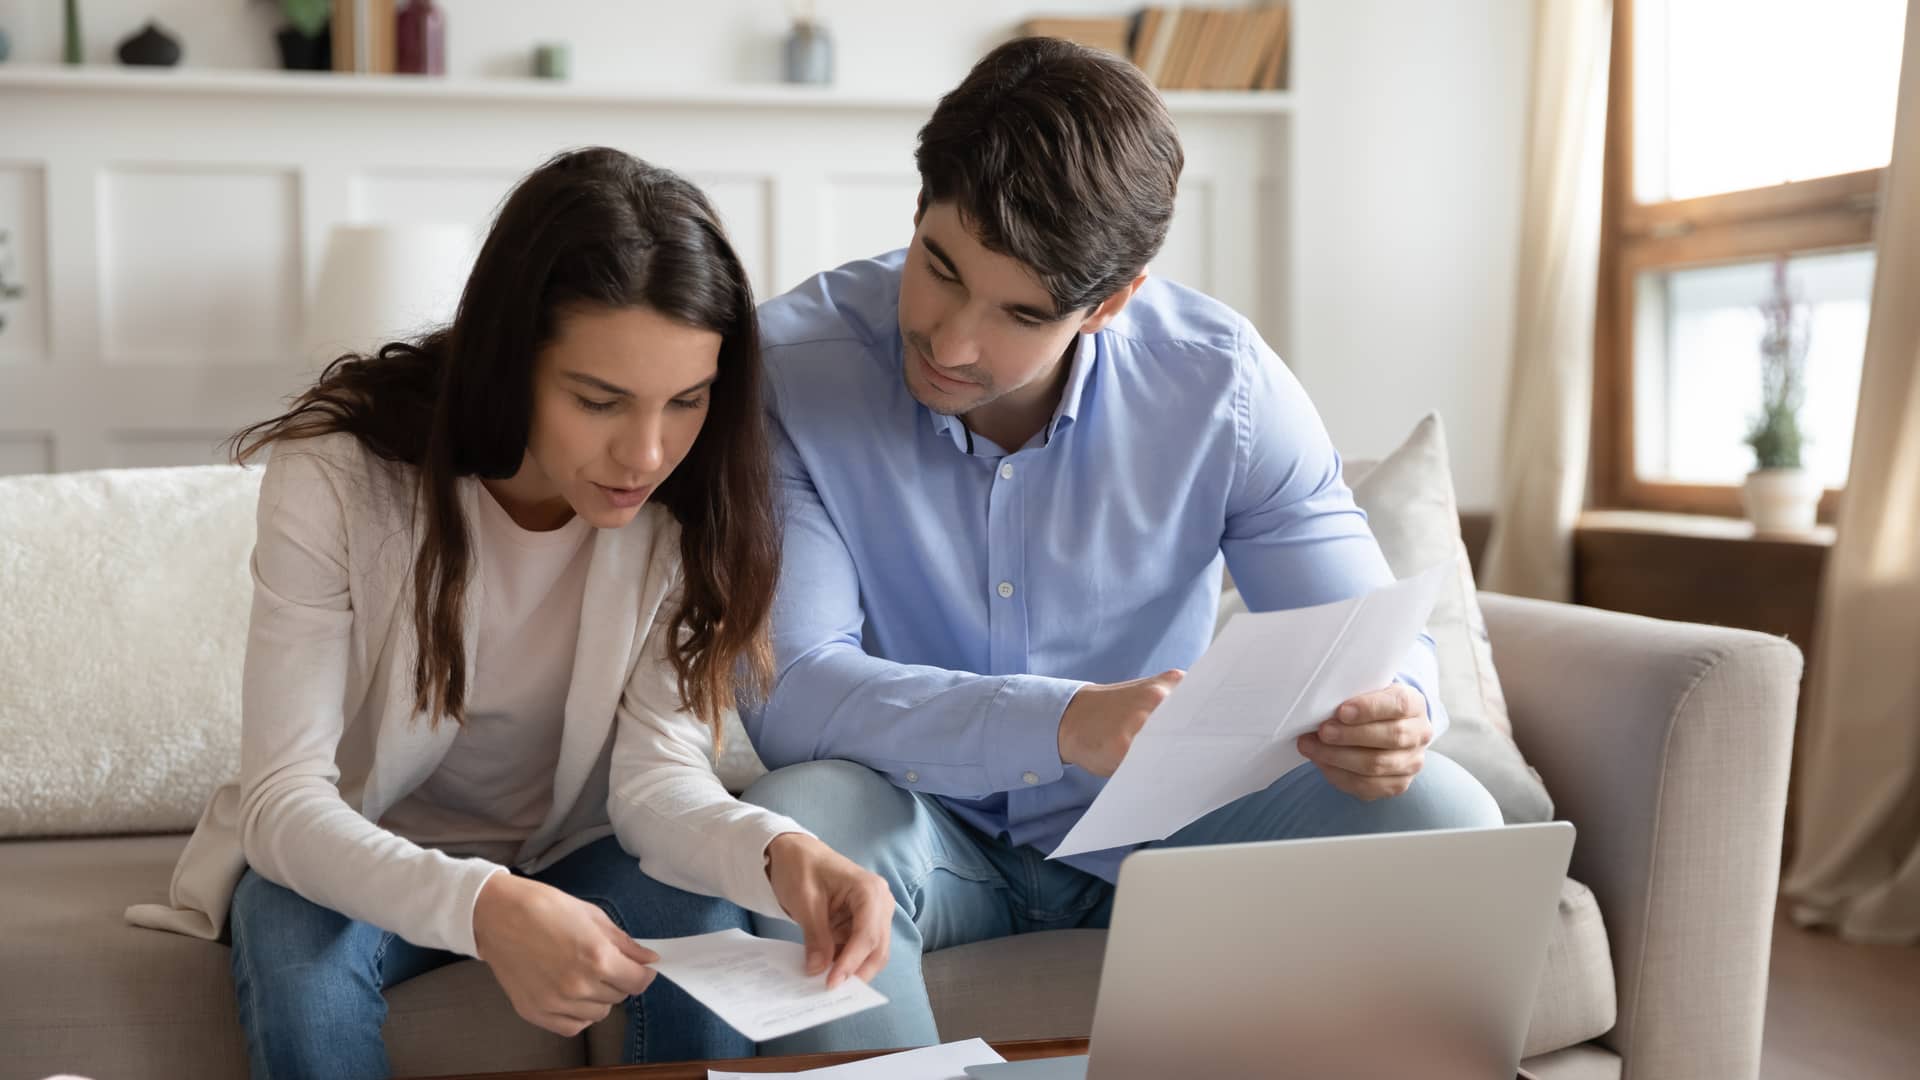 Un matrimonio joven mirando los papeles de un nuevo seguro de vida para su hipoteca con la aseguradora Mapfre